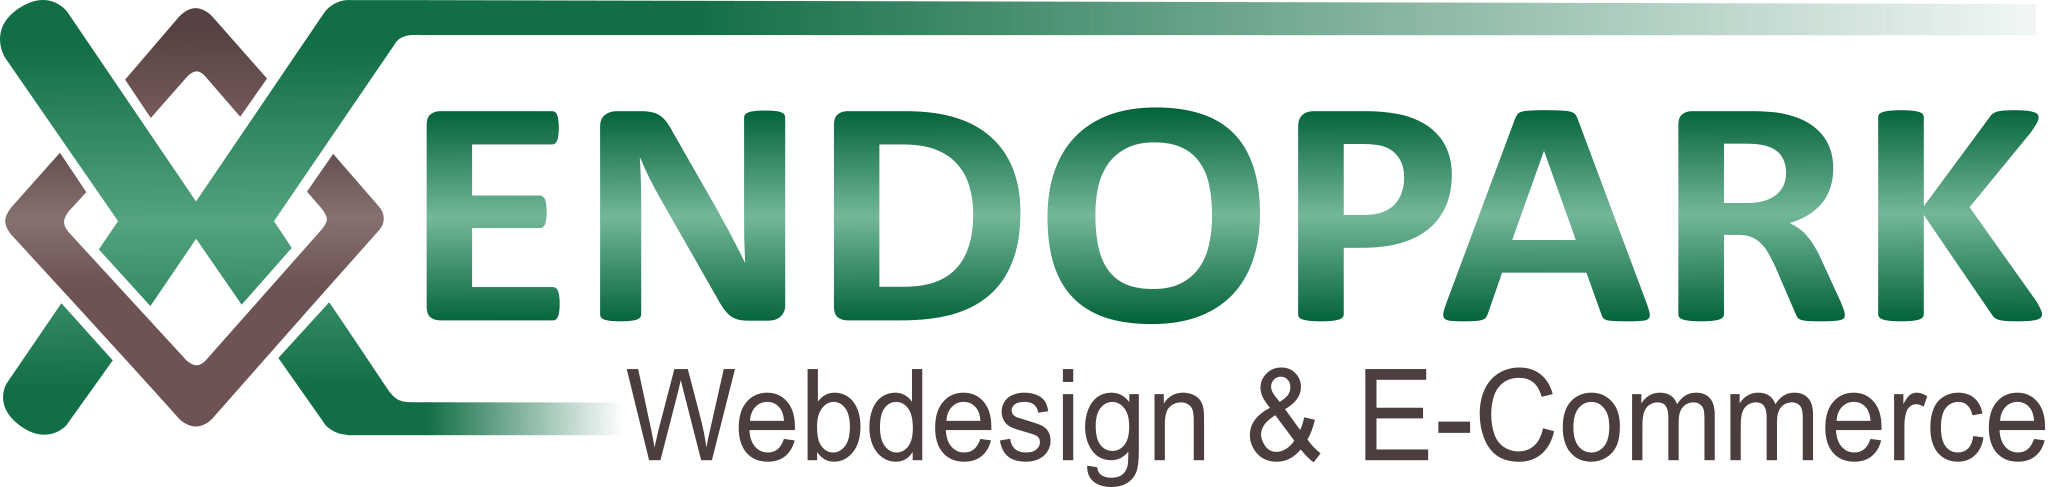 Xendopark-Logo